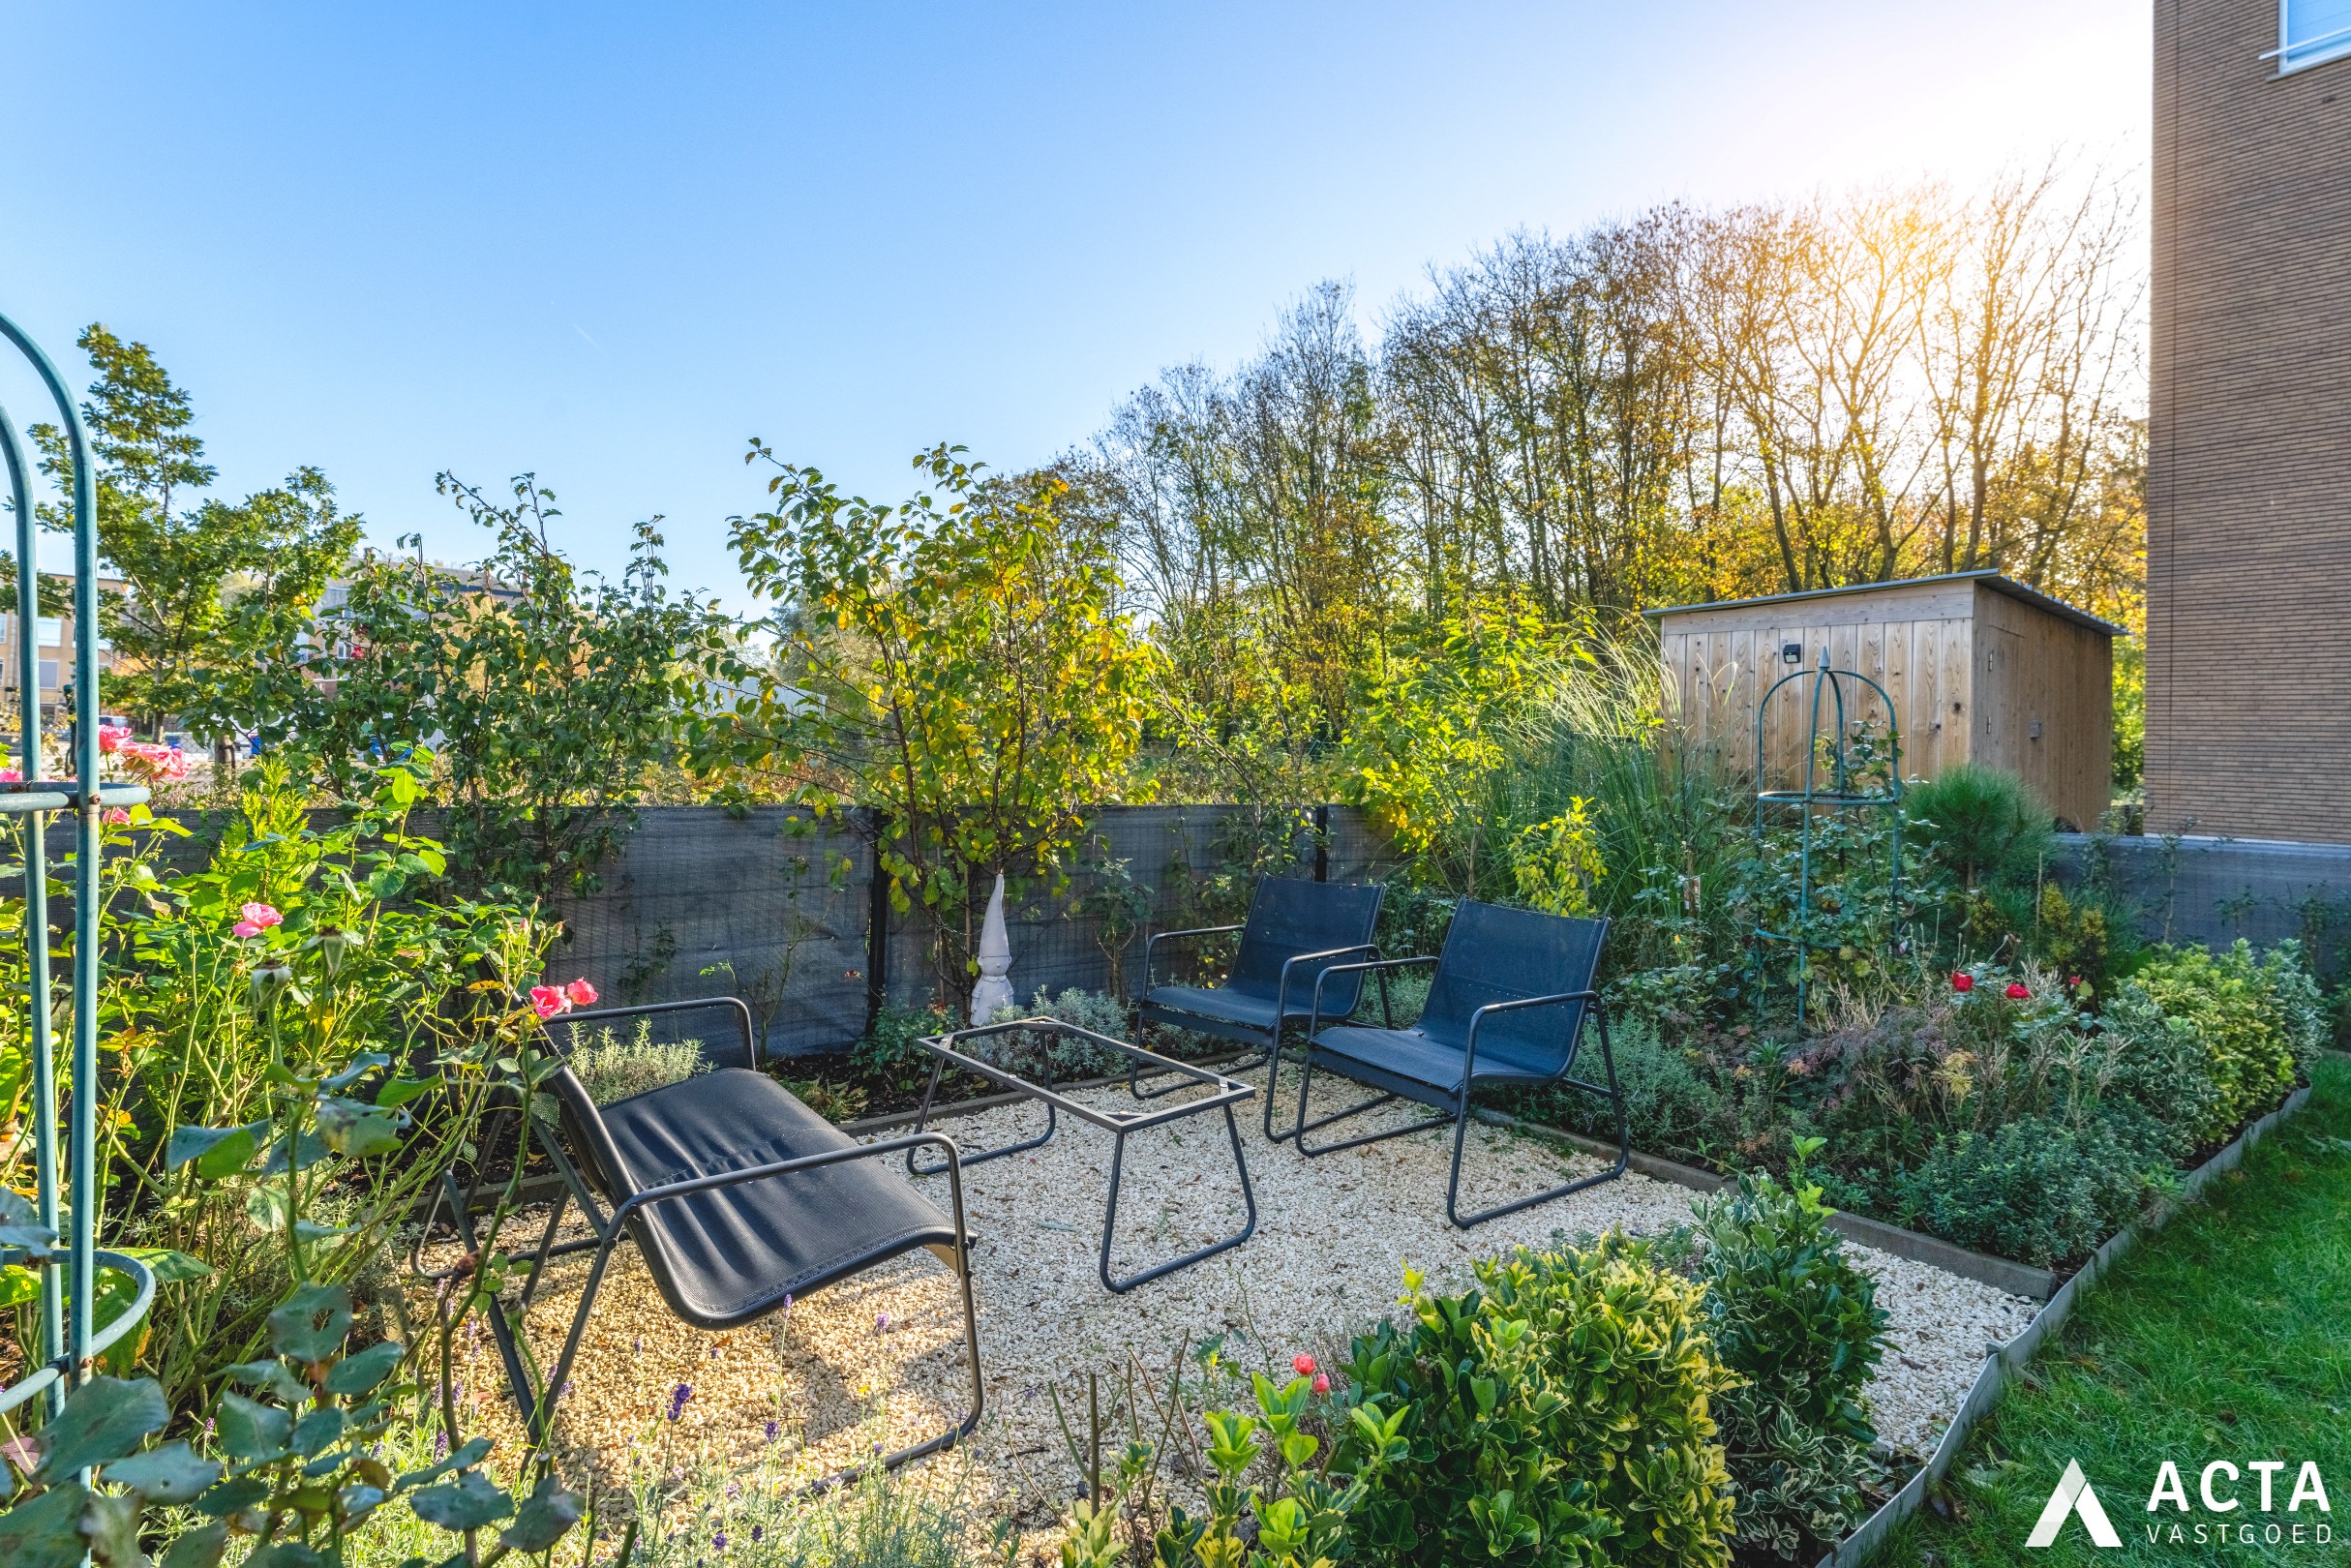 Schitterend instapklaar leefappartement met zonnige tuin aan het Maria Hendrikapark! 